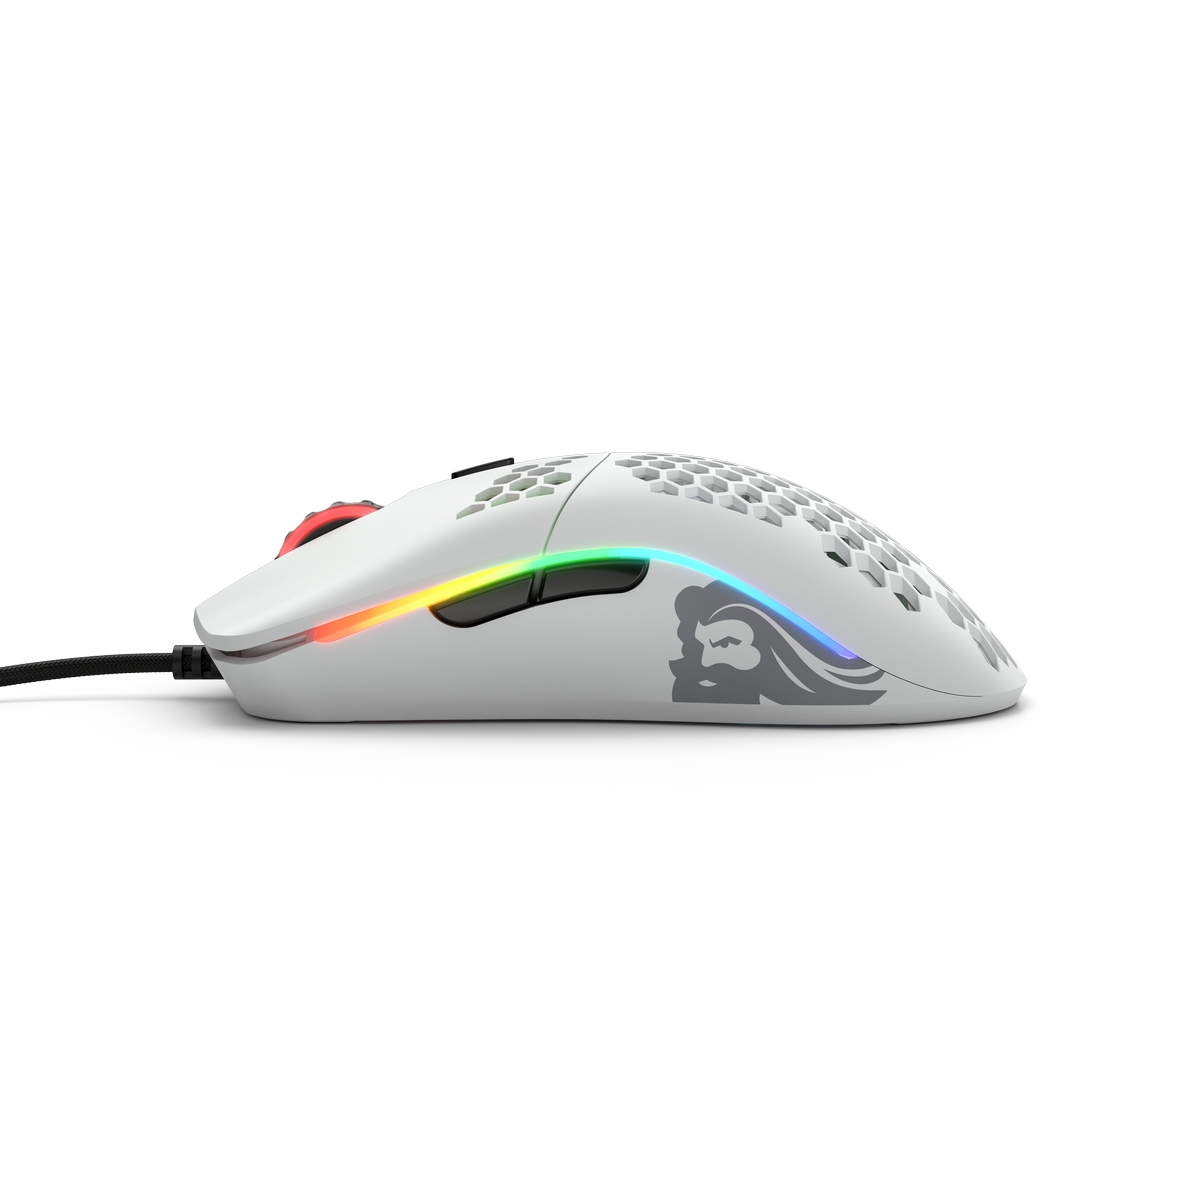 Glorious - Glorious Model O USB RGB Odin Gaming Mouse - Matte White (GO-WHITE)